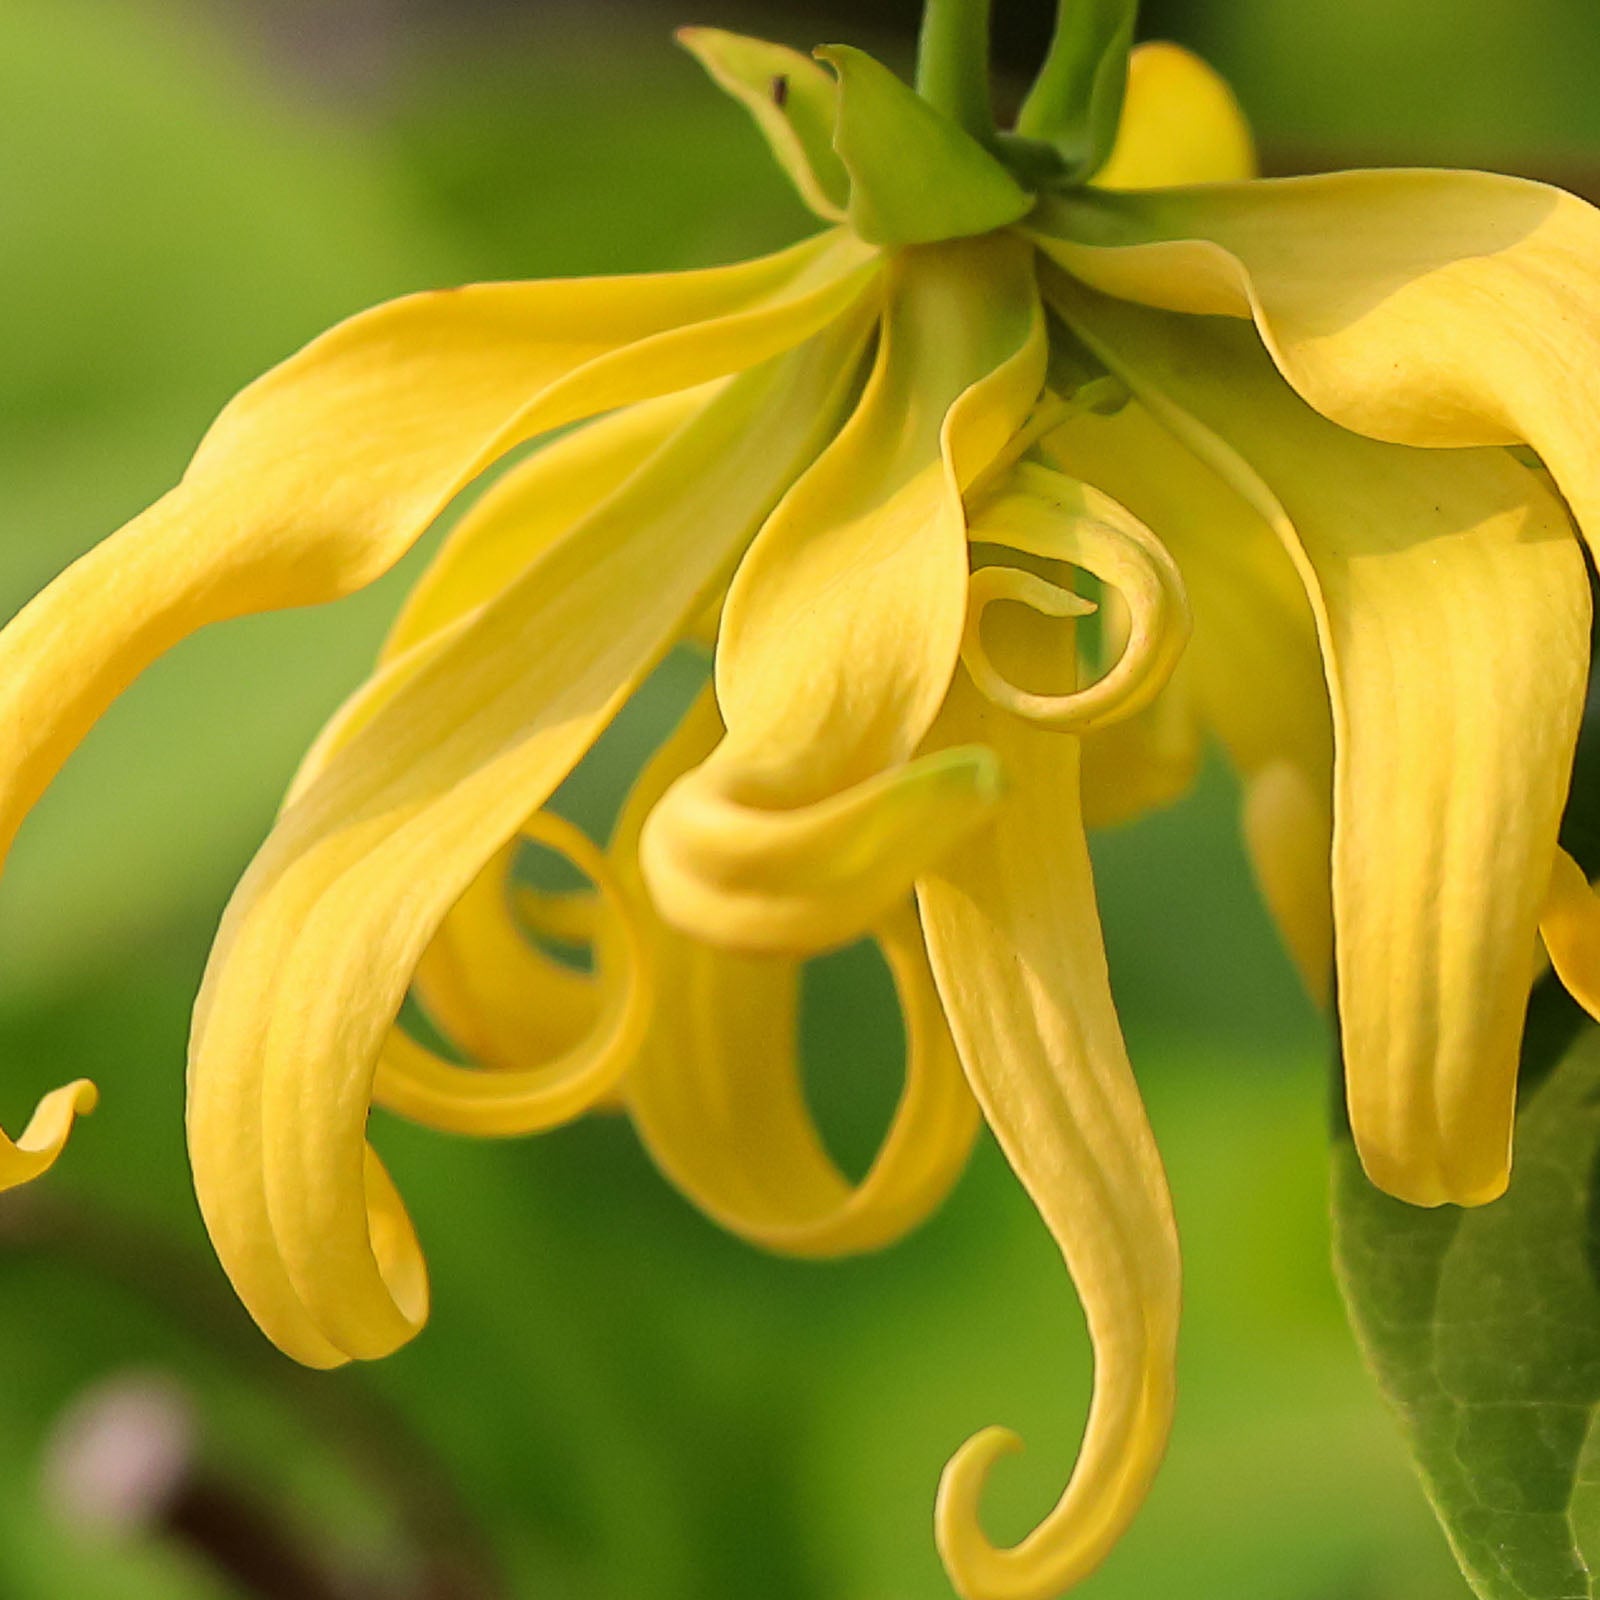 Cananga odorata (ylang ylang) flower oil